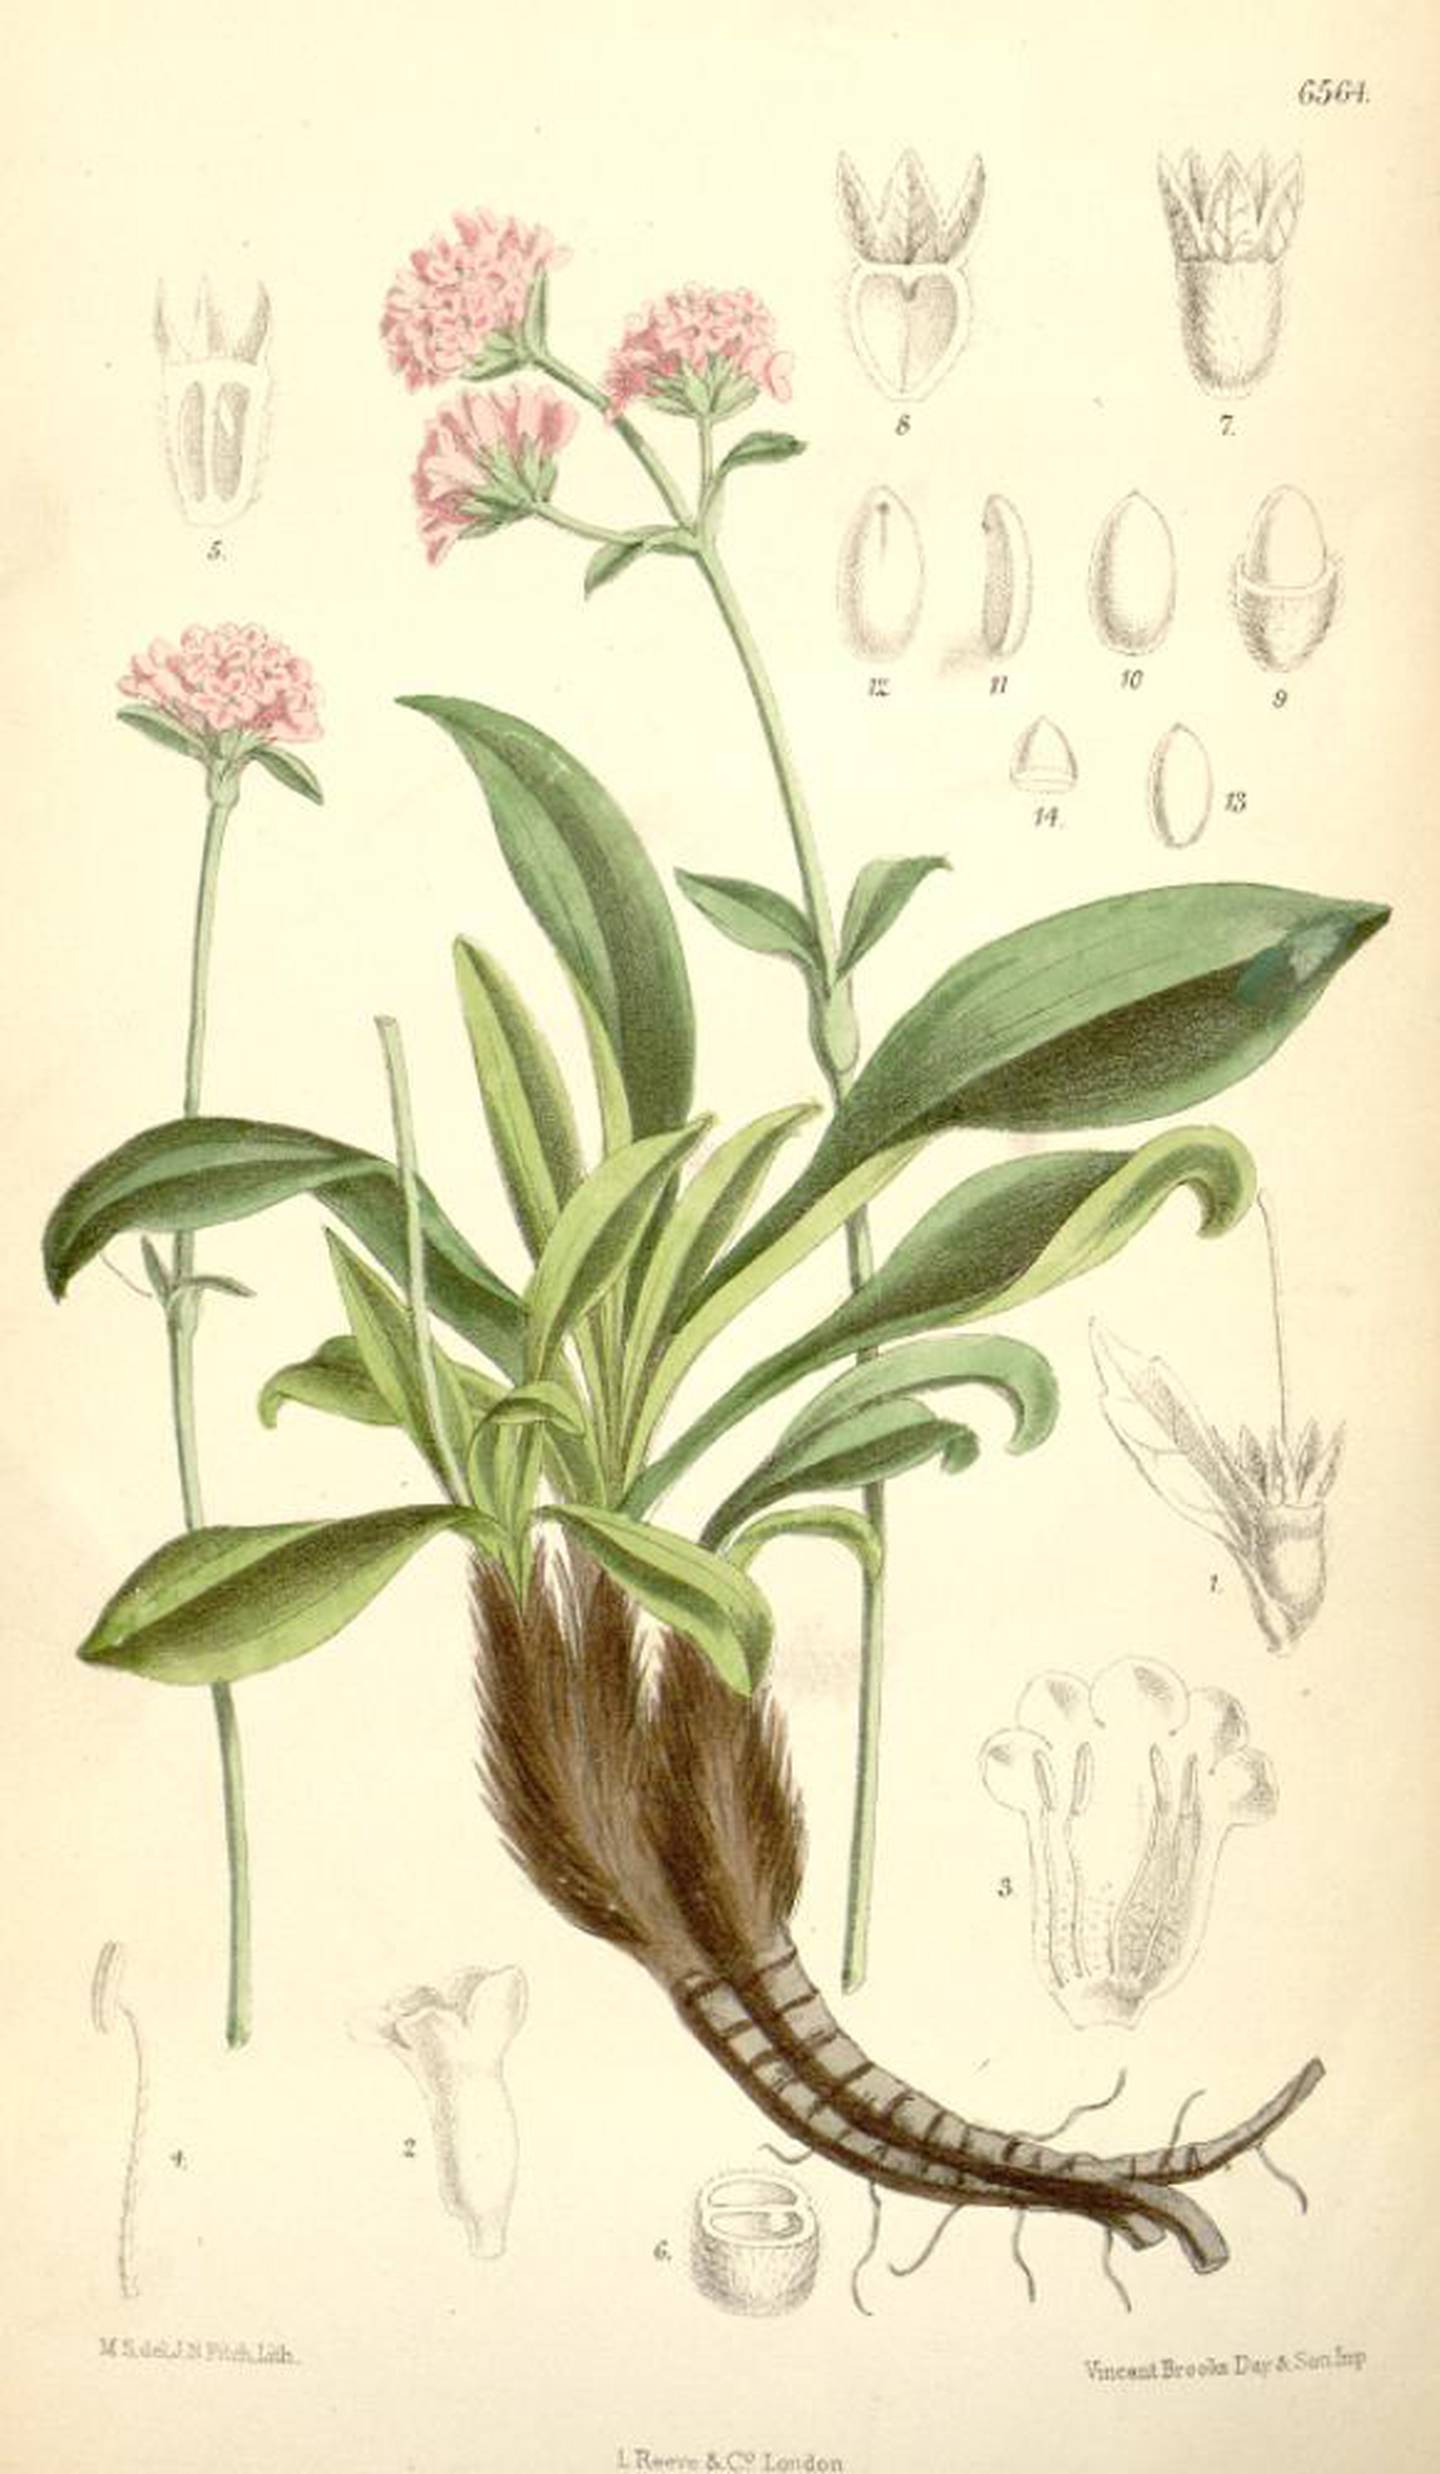 Nardostachys grandiflora i vendelrotfamilien, tegnet av Joseph Dalton Hooker (1817-1911)